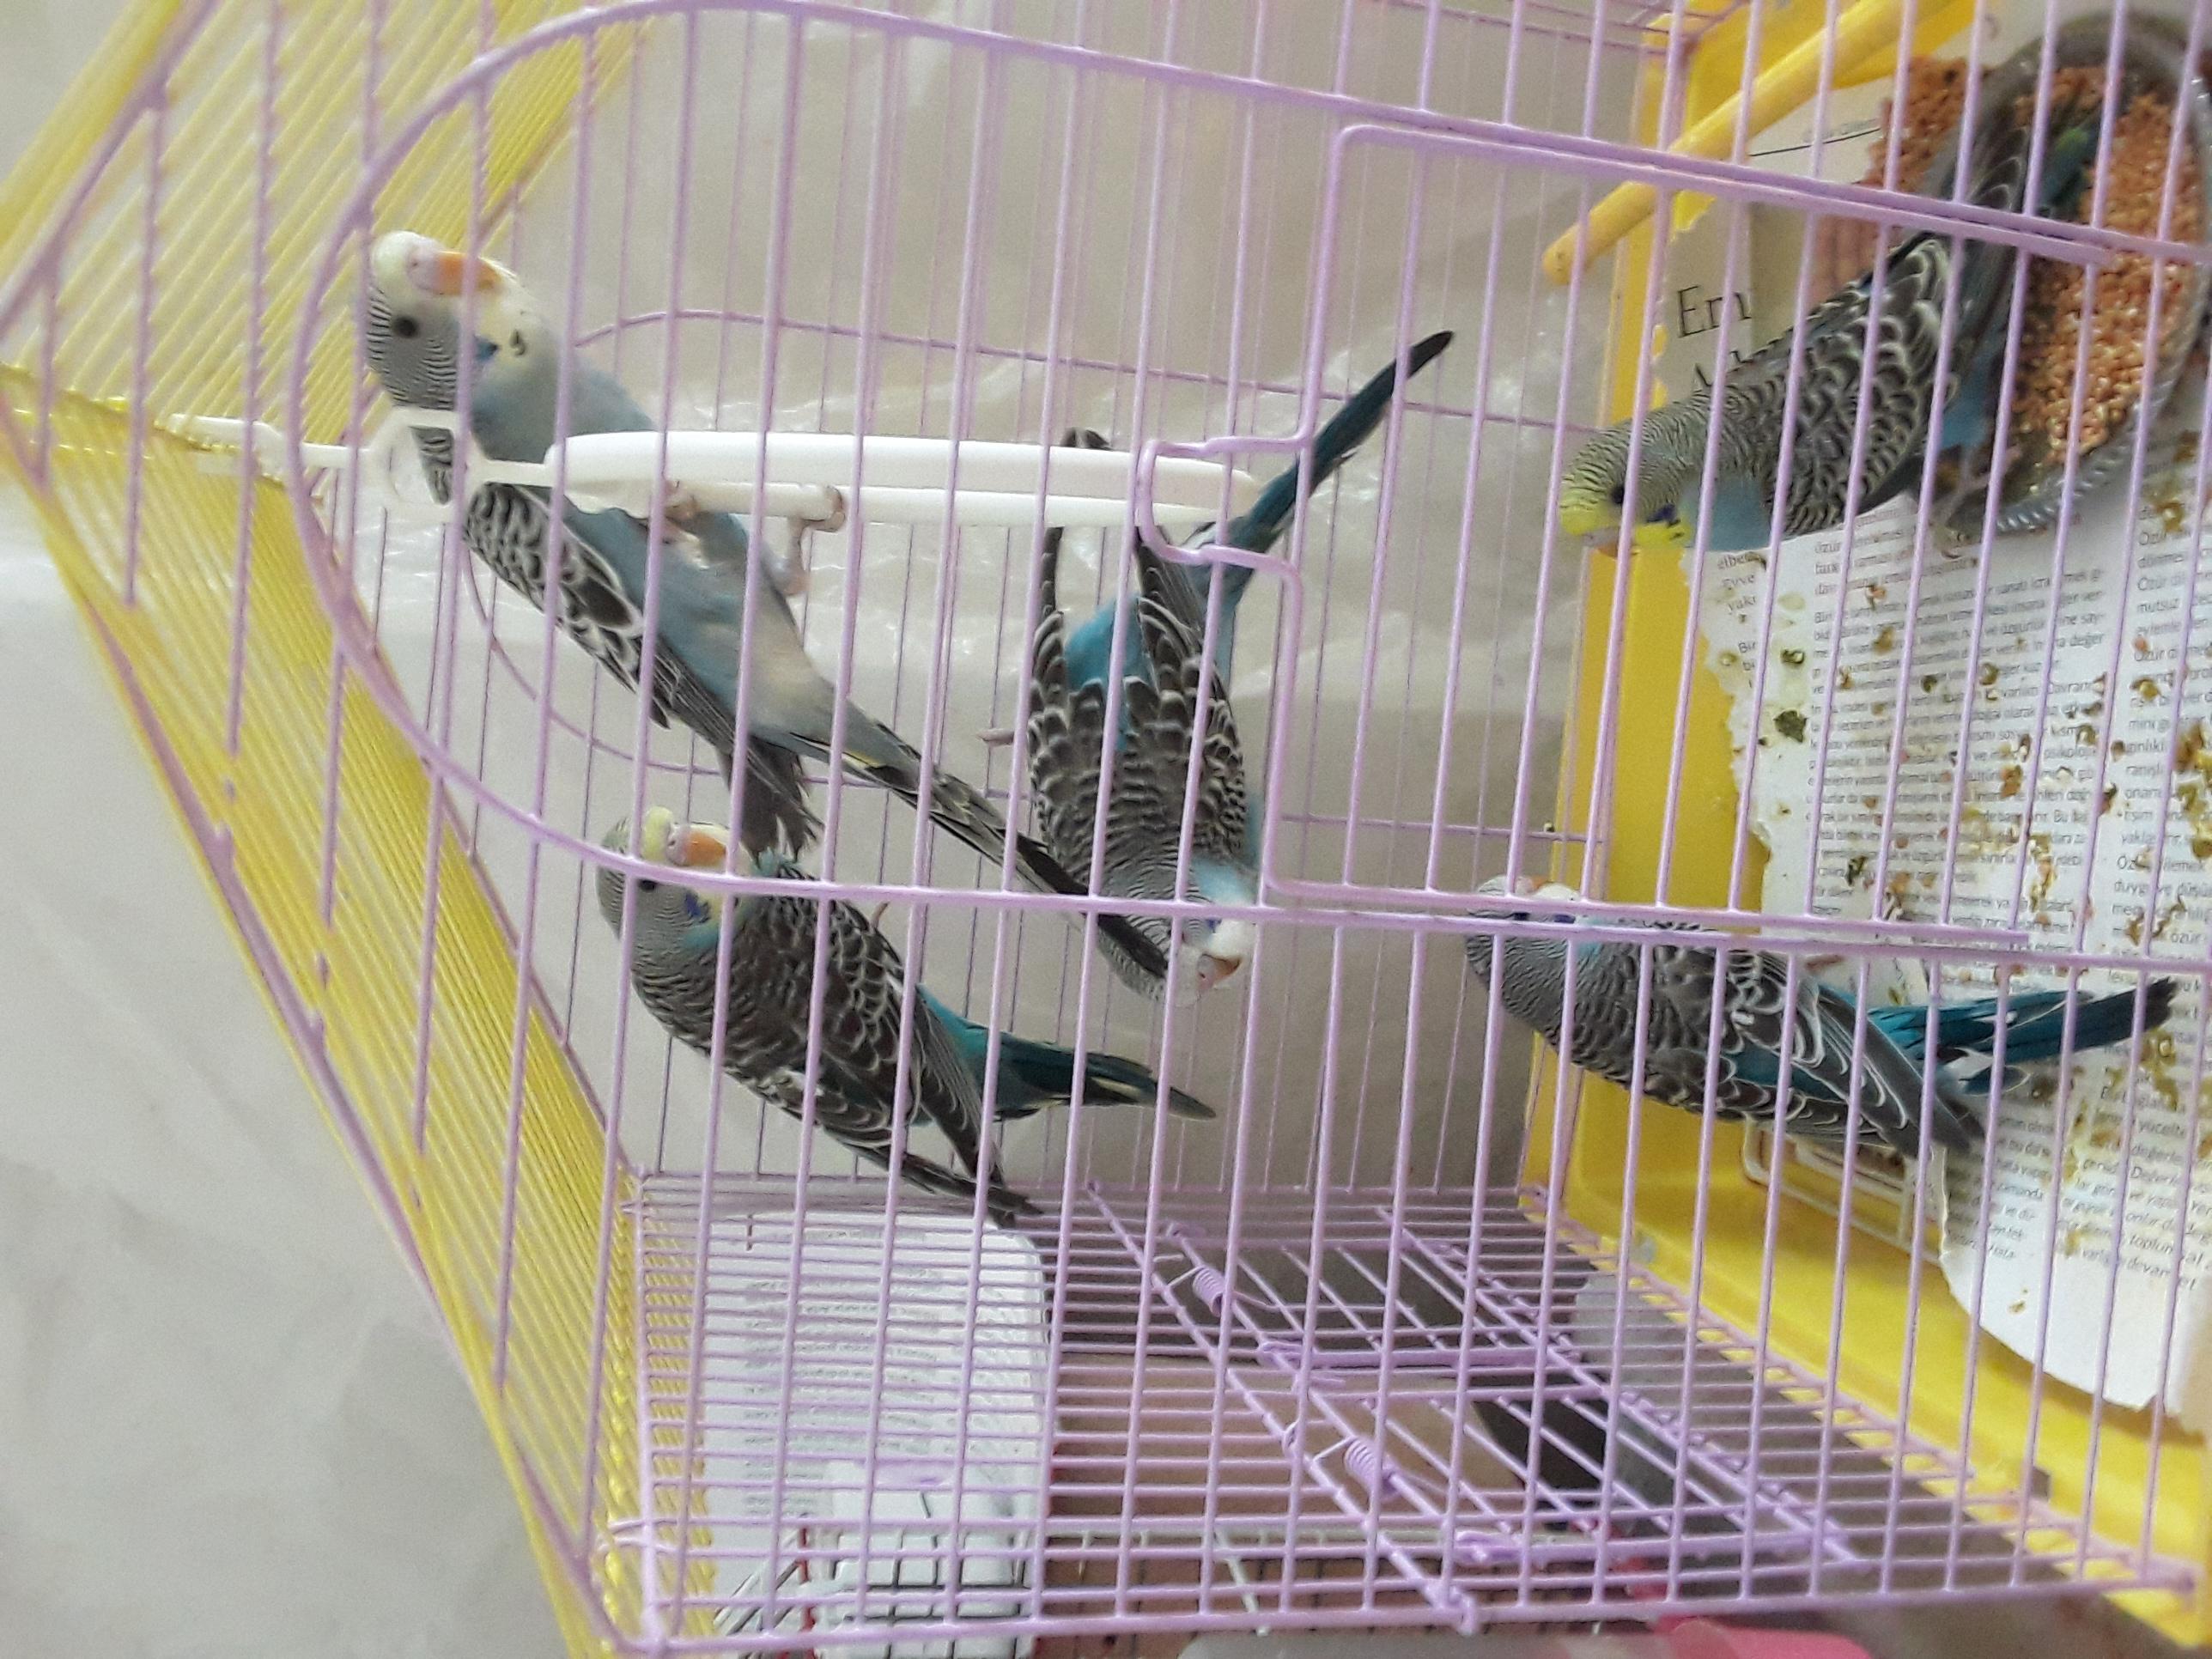 Muhabbet Kuşu - Üretici Serhat Fidan 70 tl fiyat ile 3 adet muhabbet kuşu  satmak istiyor